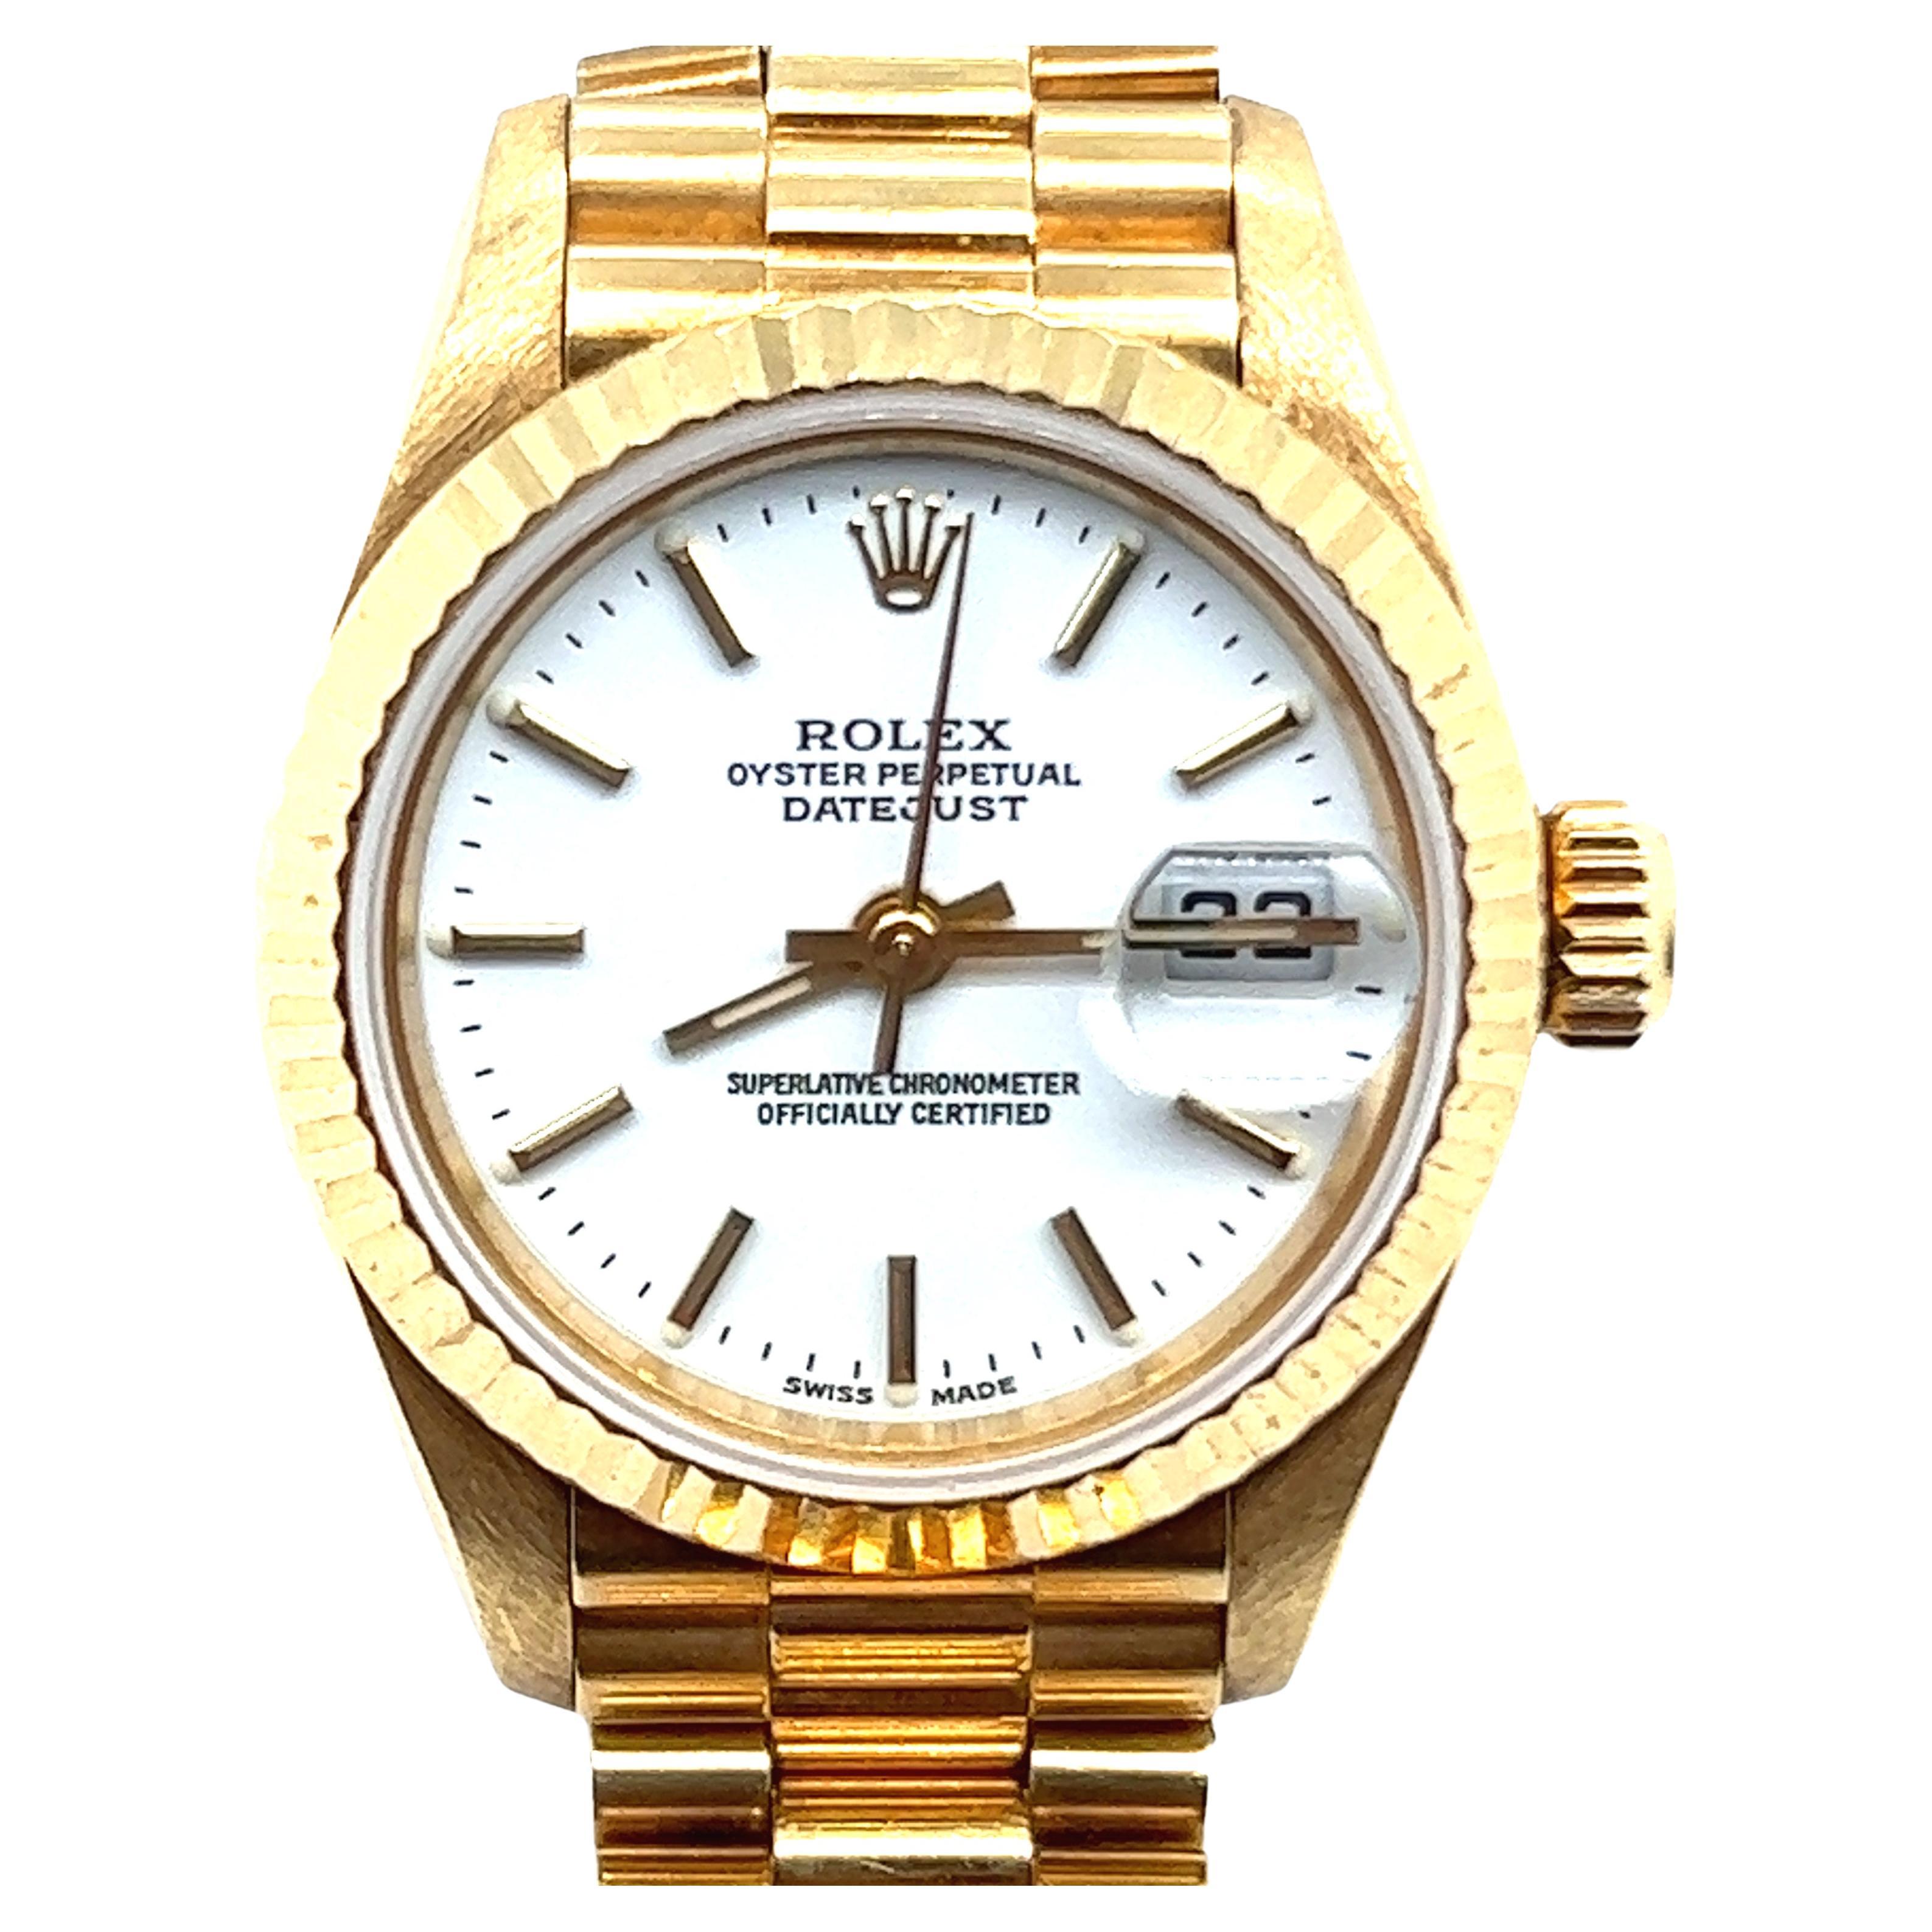 La Rolex President Datejust est un classique ultime.

Alors que les montres en or sont traditionnellement réservées aux occasions officielles, les collectionneurs modernes les considèrent comme des montres de tous les jours.

Ce modèle intemporel